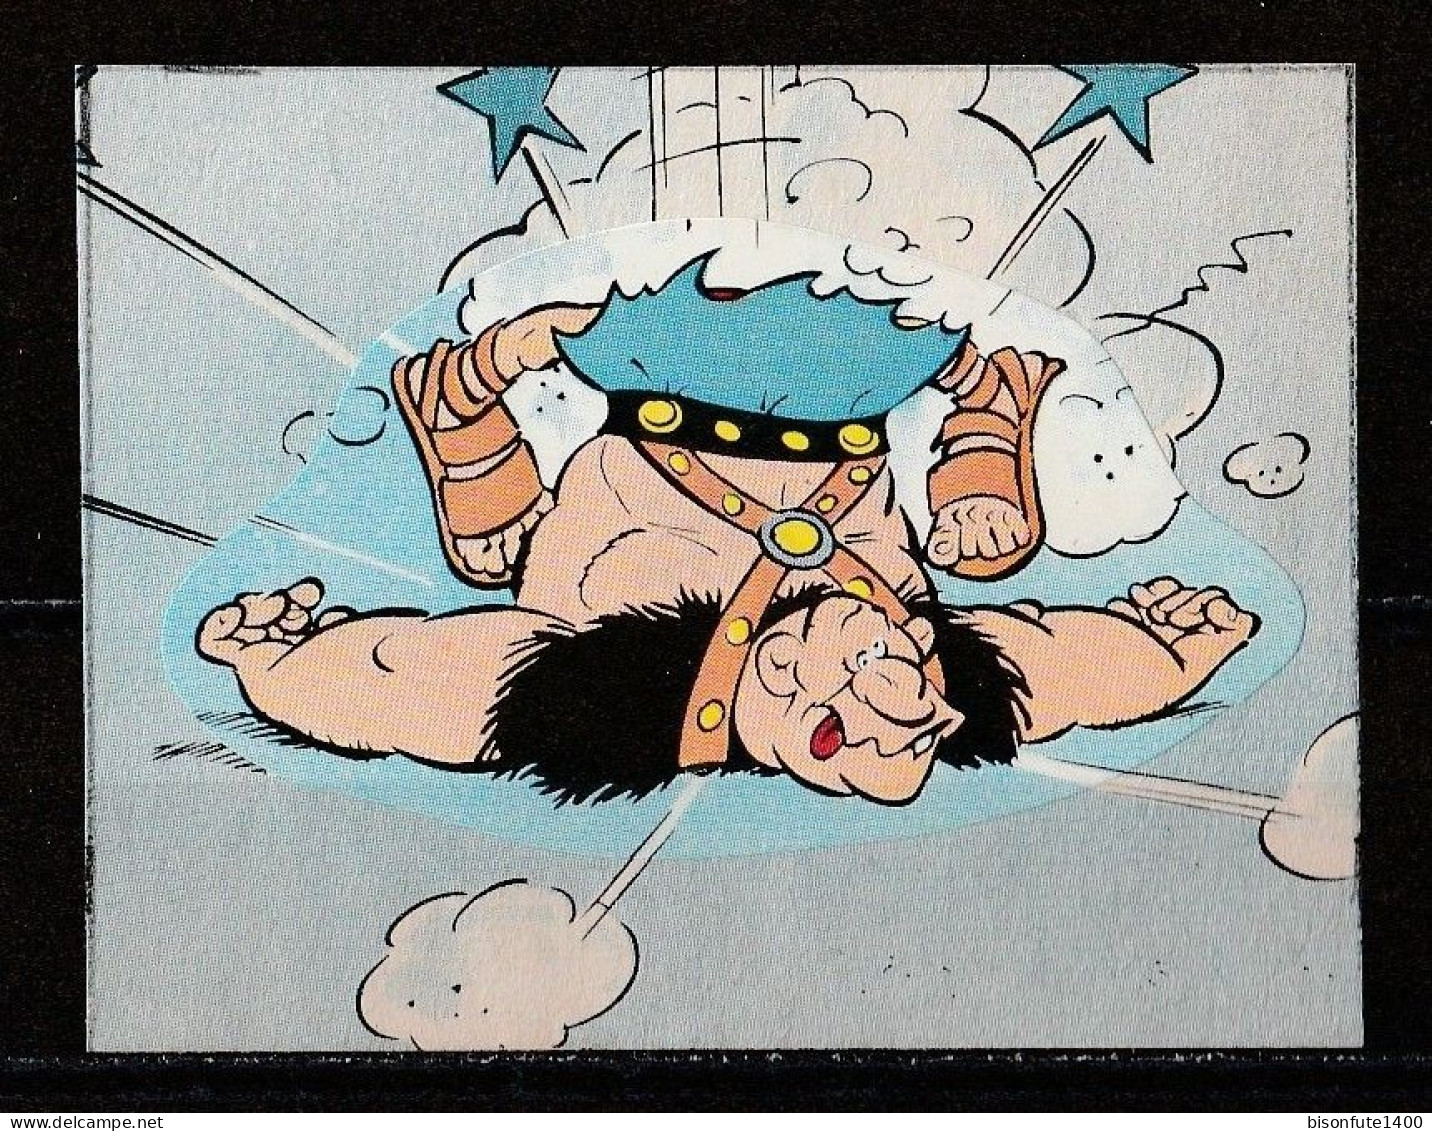 ASTERIX : Occasion : Vignette Autocollante N° 209 De L'album PANINI "Astérix" De 1987. ( Voir Description ) - French Edition